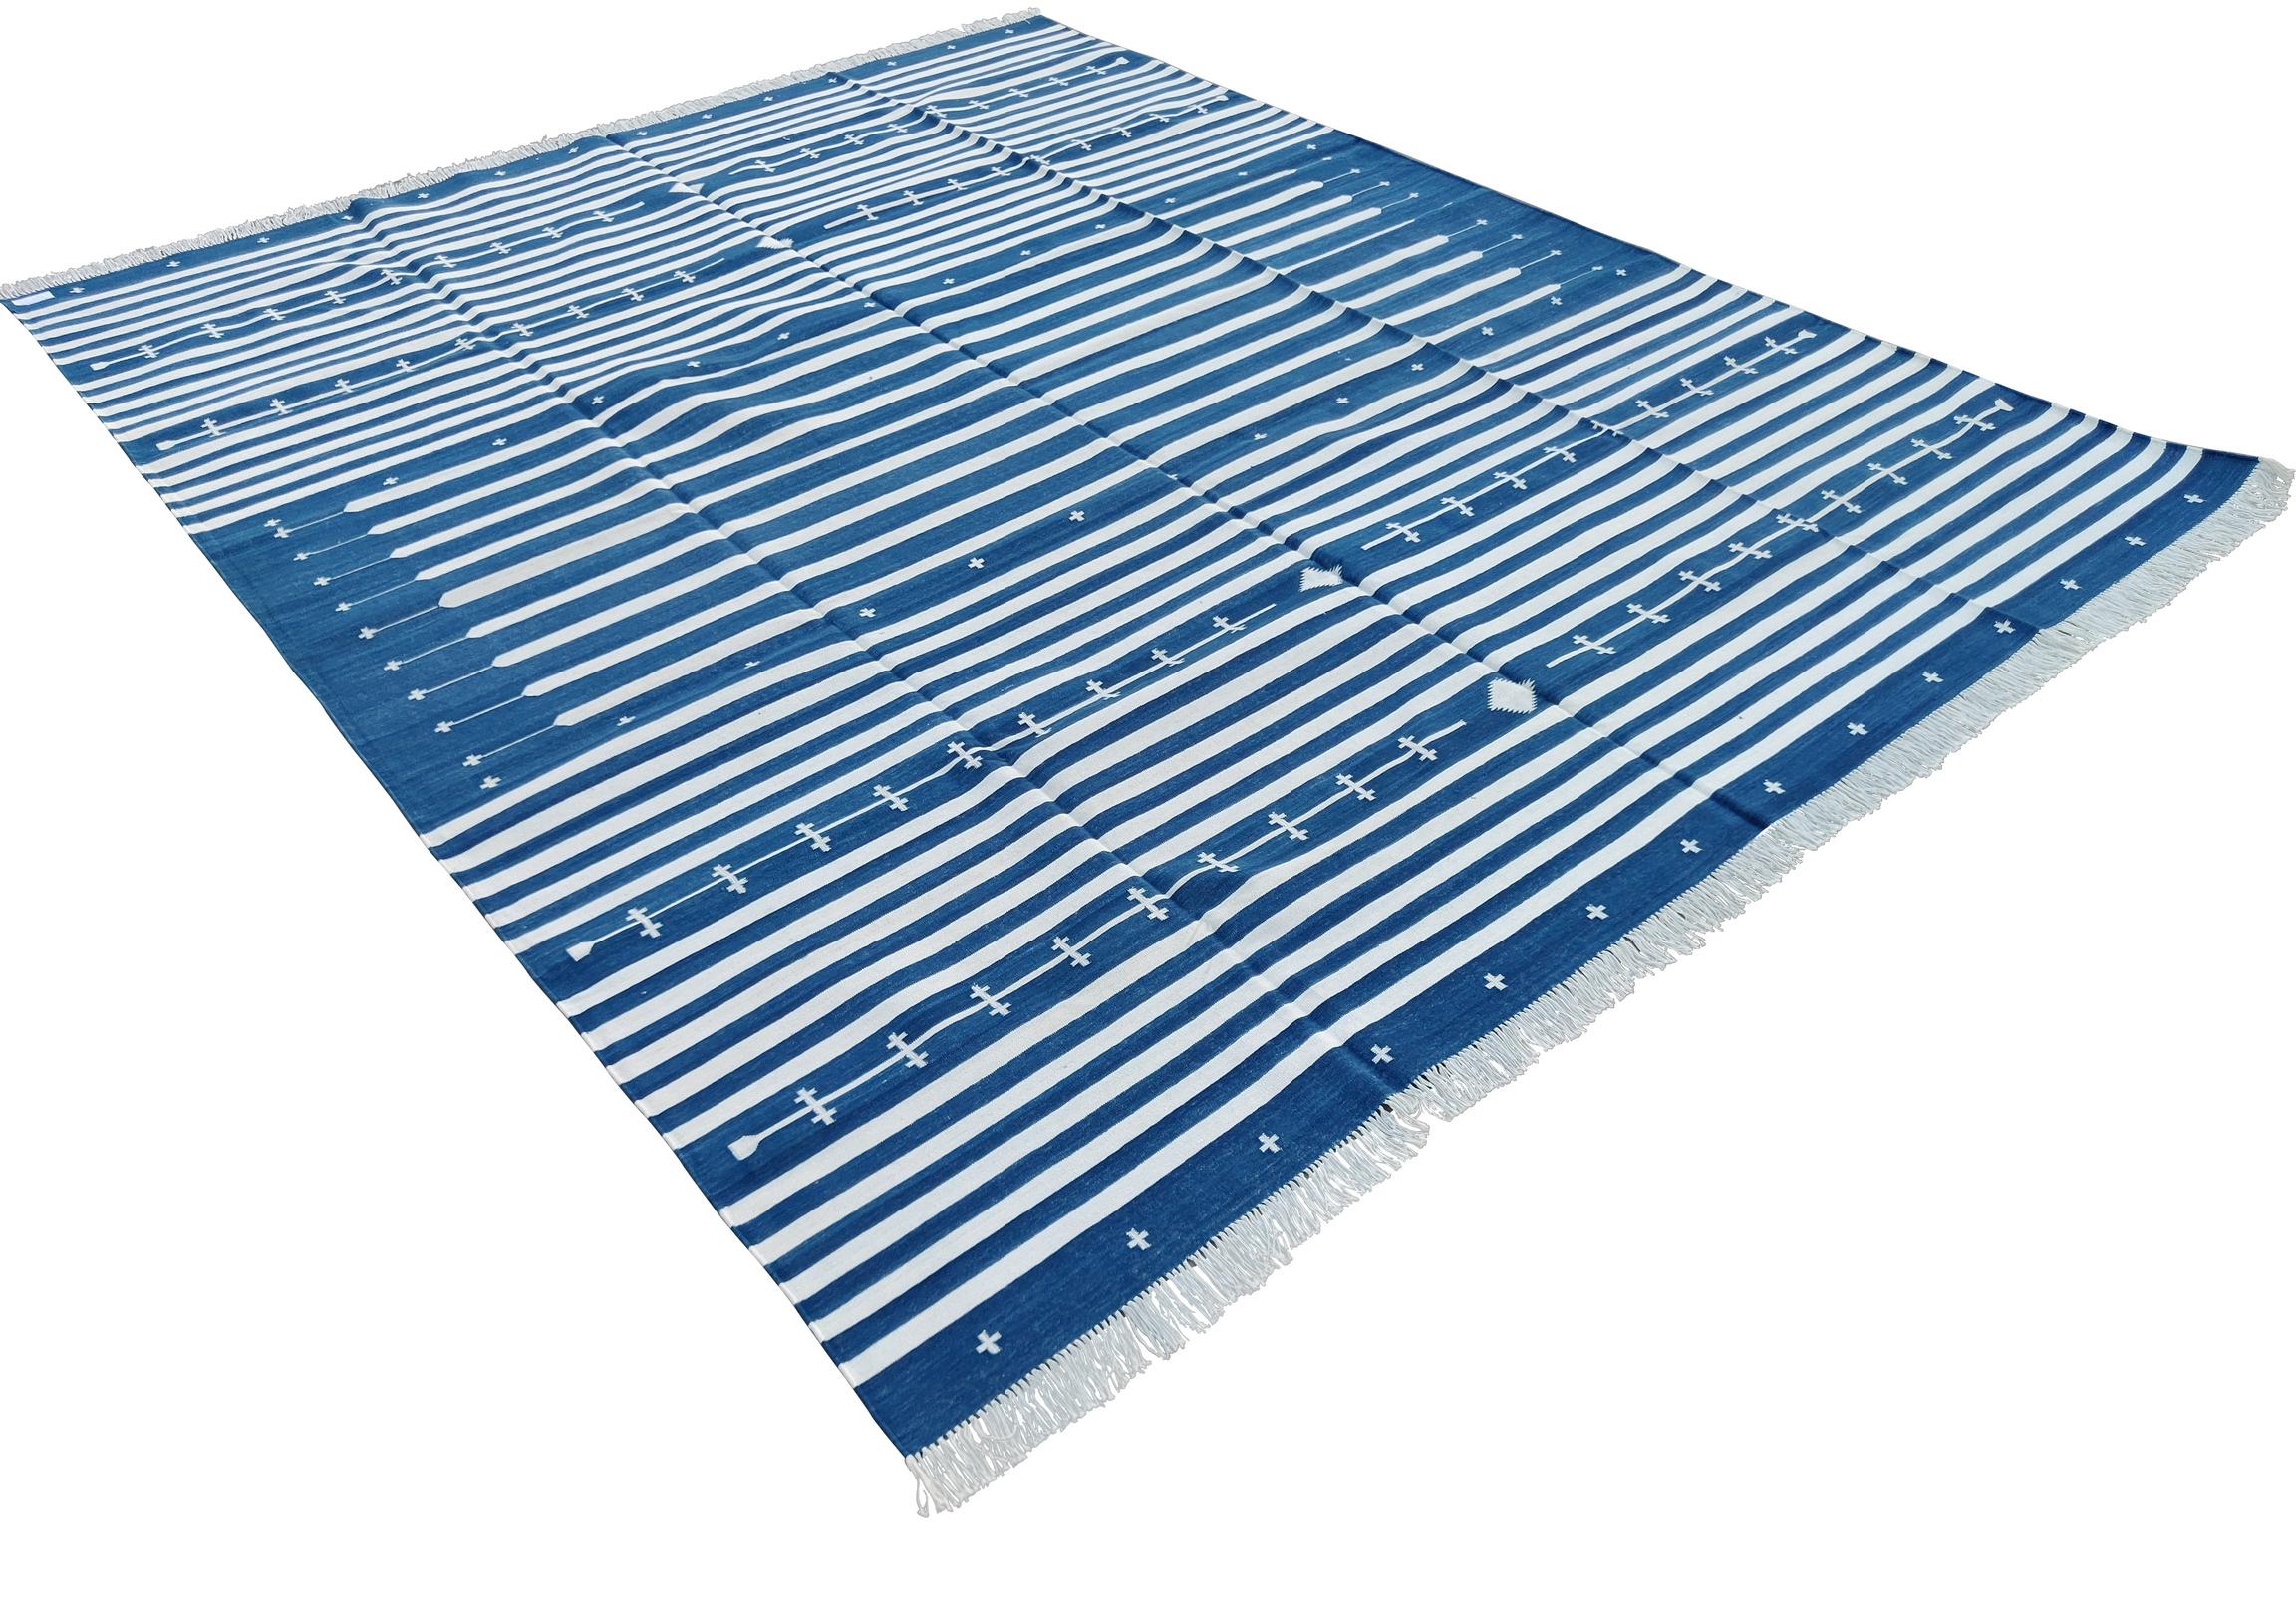 Baumwolle pflanzlich gefärbt Indigo blau und weiß gestreift indischen Dhurrie Teppich-8'x10' 
Diese speziellen flachgewebten Dhurries werden aus 15-fachem Garn aus 100% Baumwolle handgewebt. Aufgrund der speziellen Fertigungstechniken, die zur